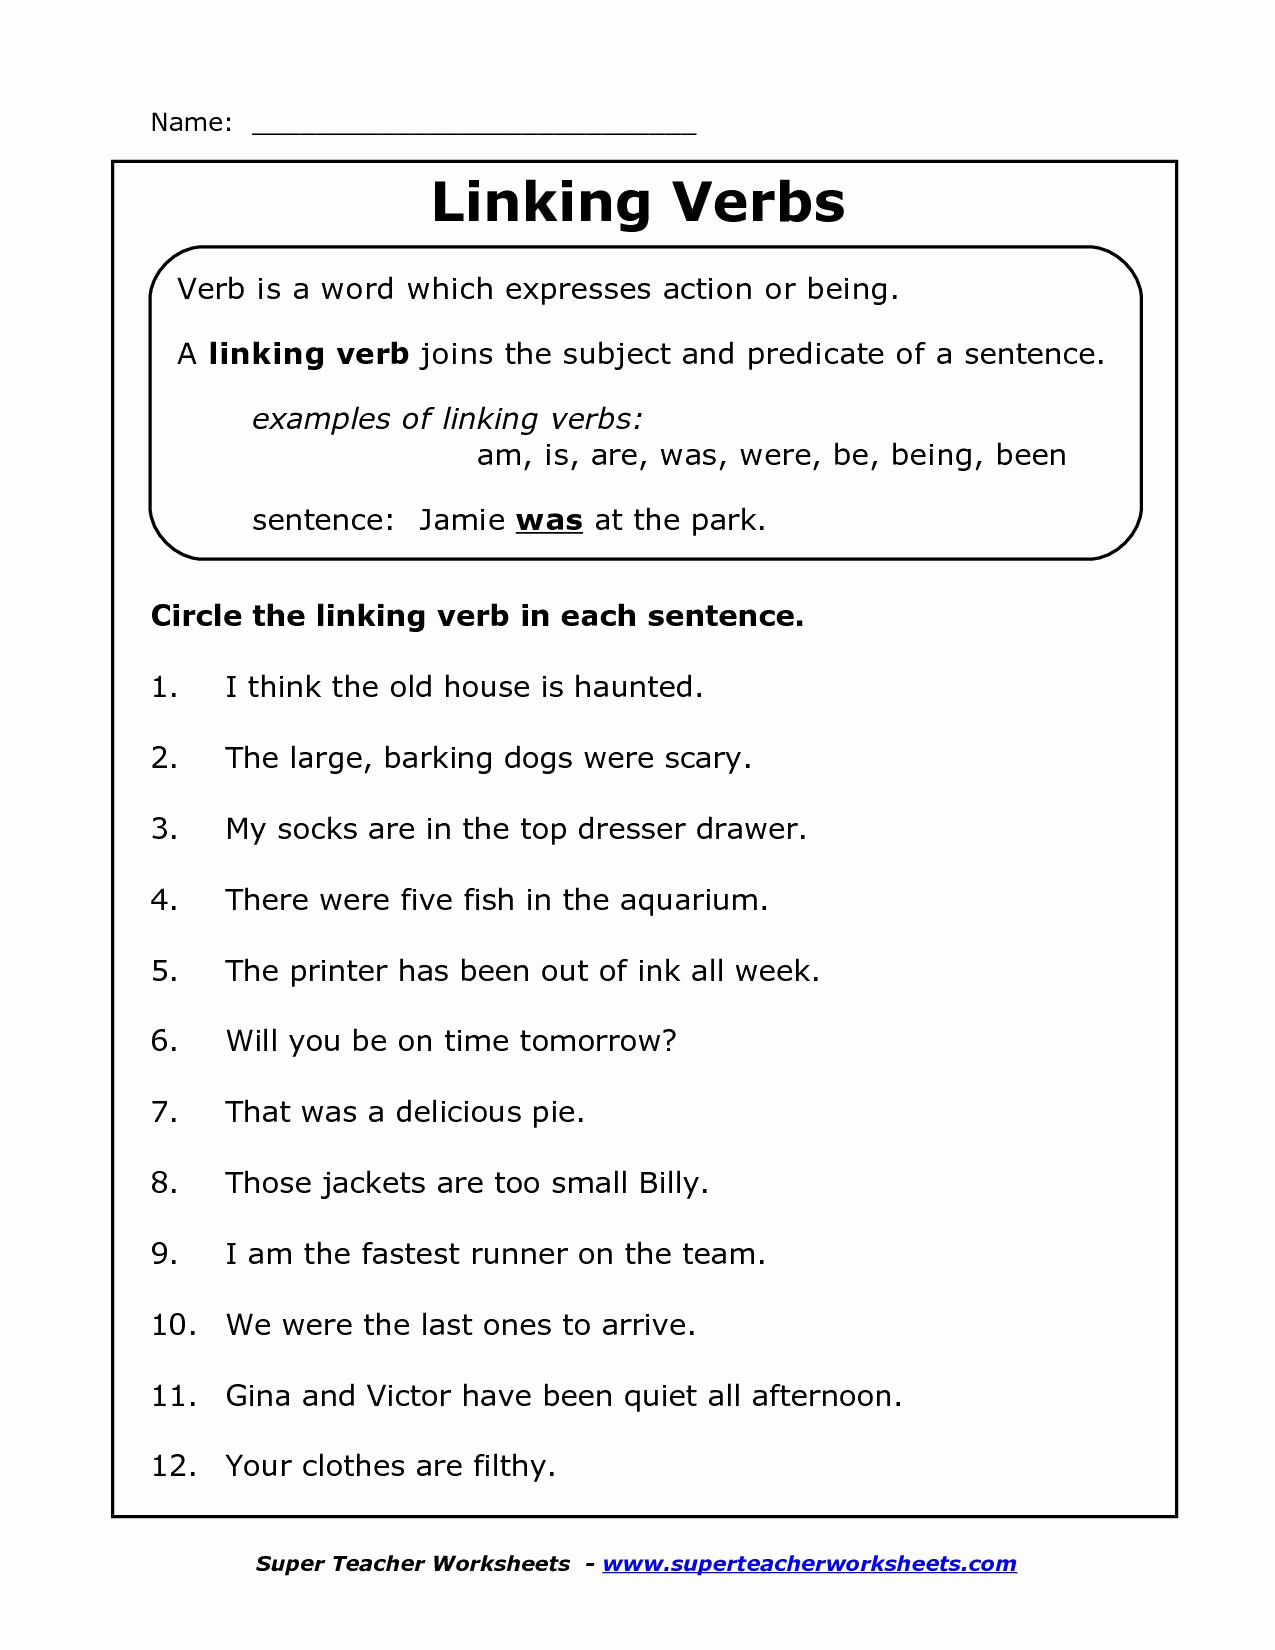 Verbs Worksheets for 1st Grade Action Verbs Worksheets 1st Grade ÙÙ ÙØ³Ø¨Ù ÙÙ ÙØ ÙÙ Ø§ÙØµÙØ±